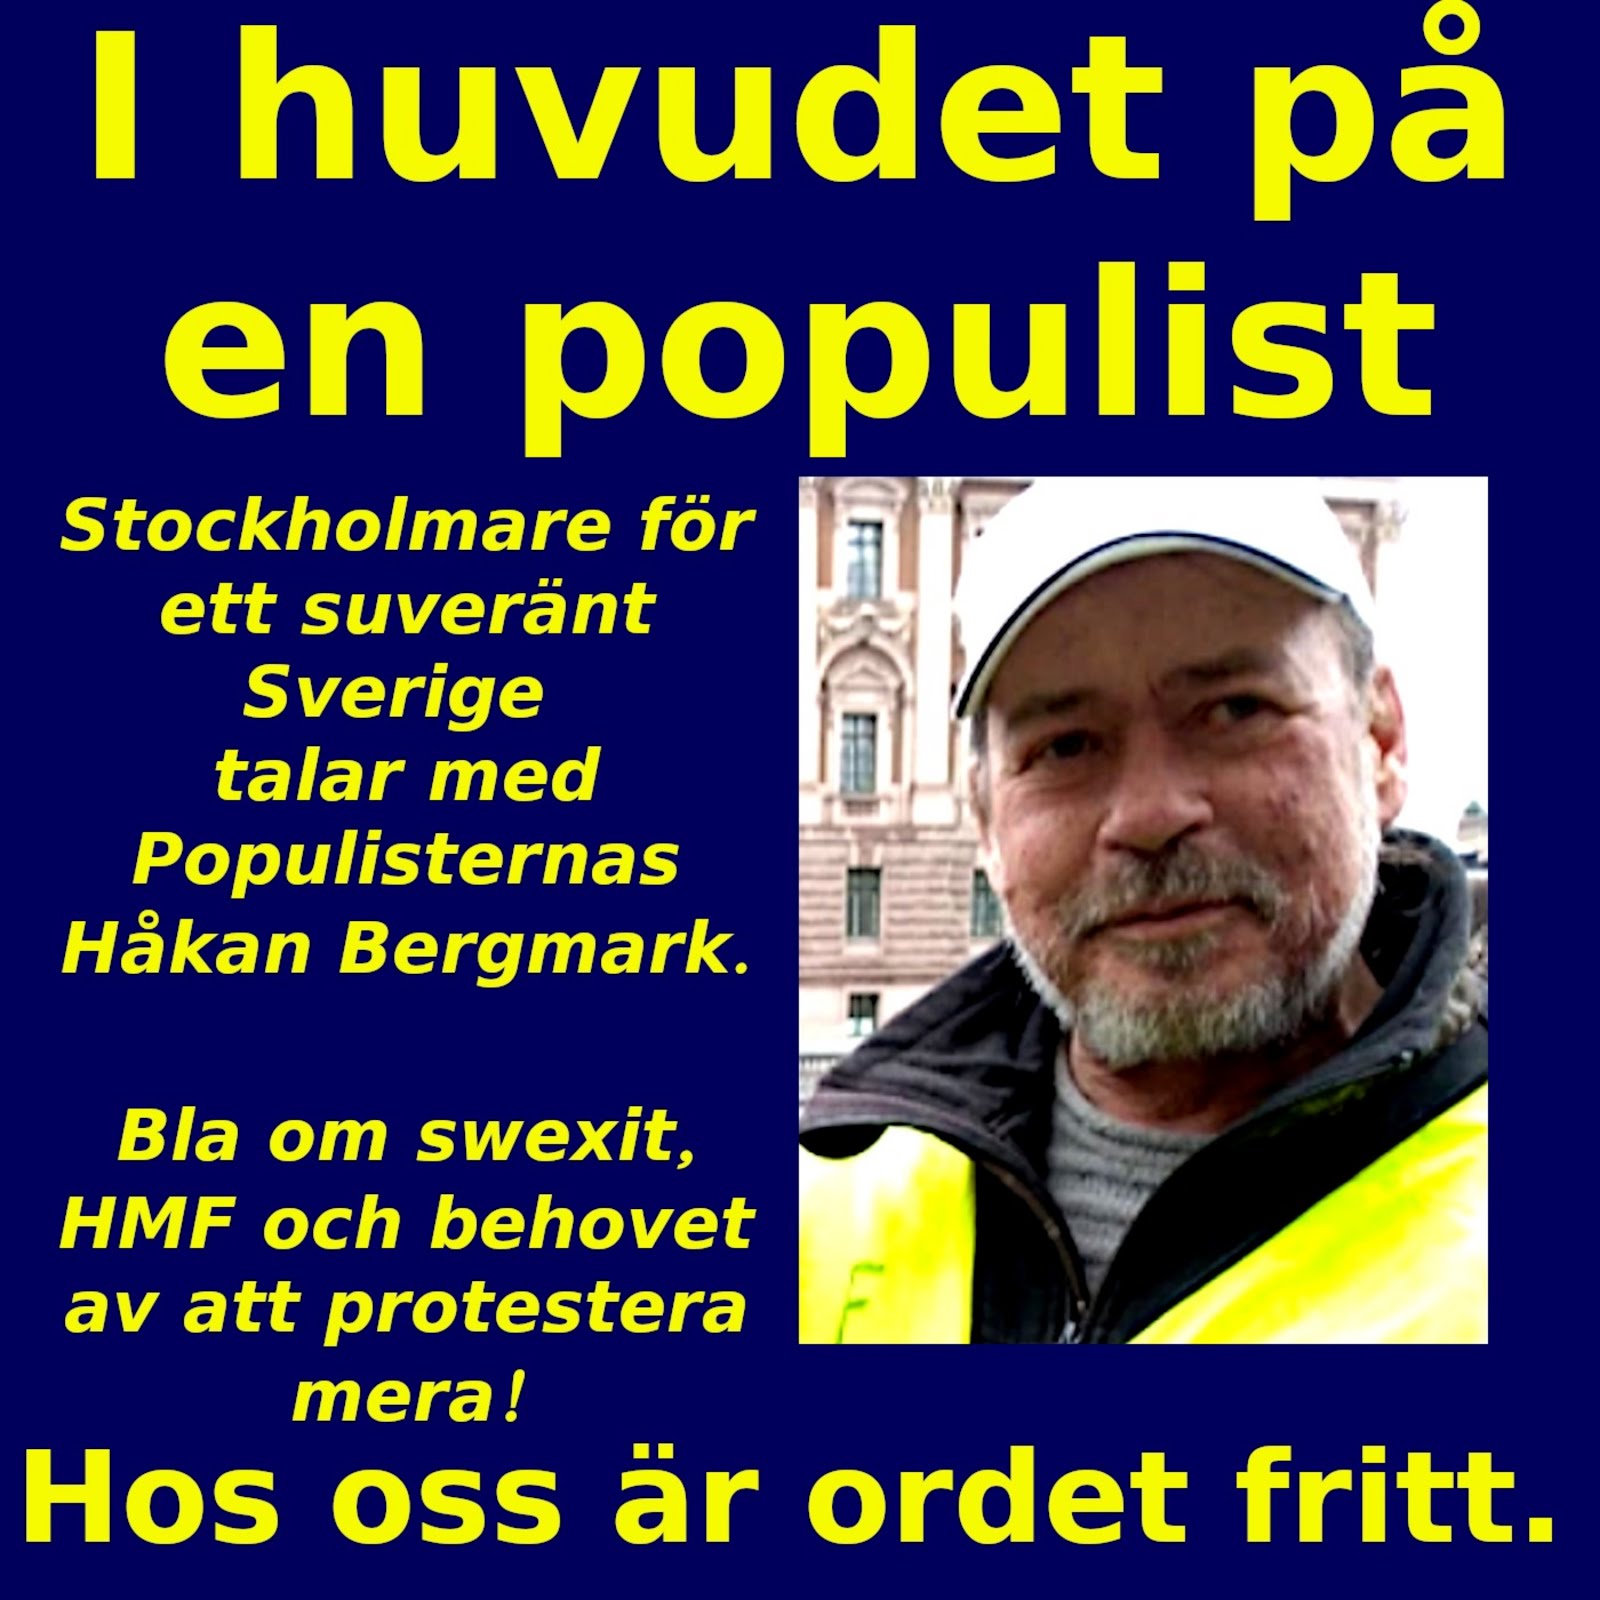 Intervju med Håkan Bergqvist